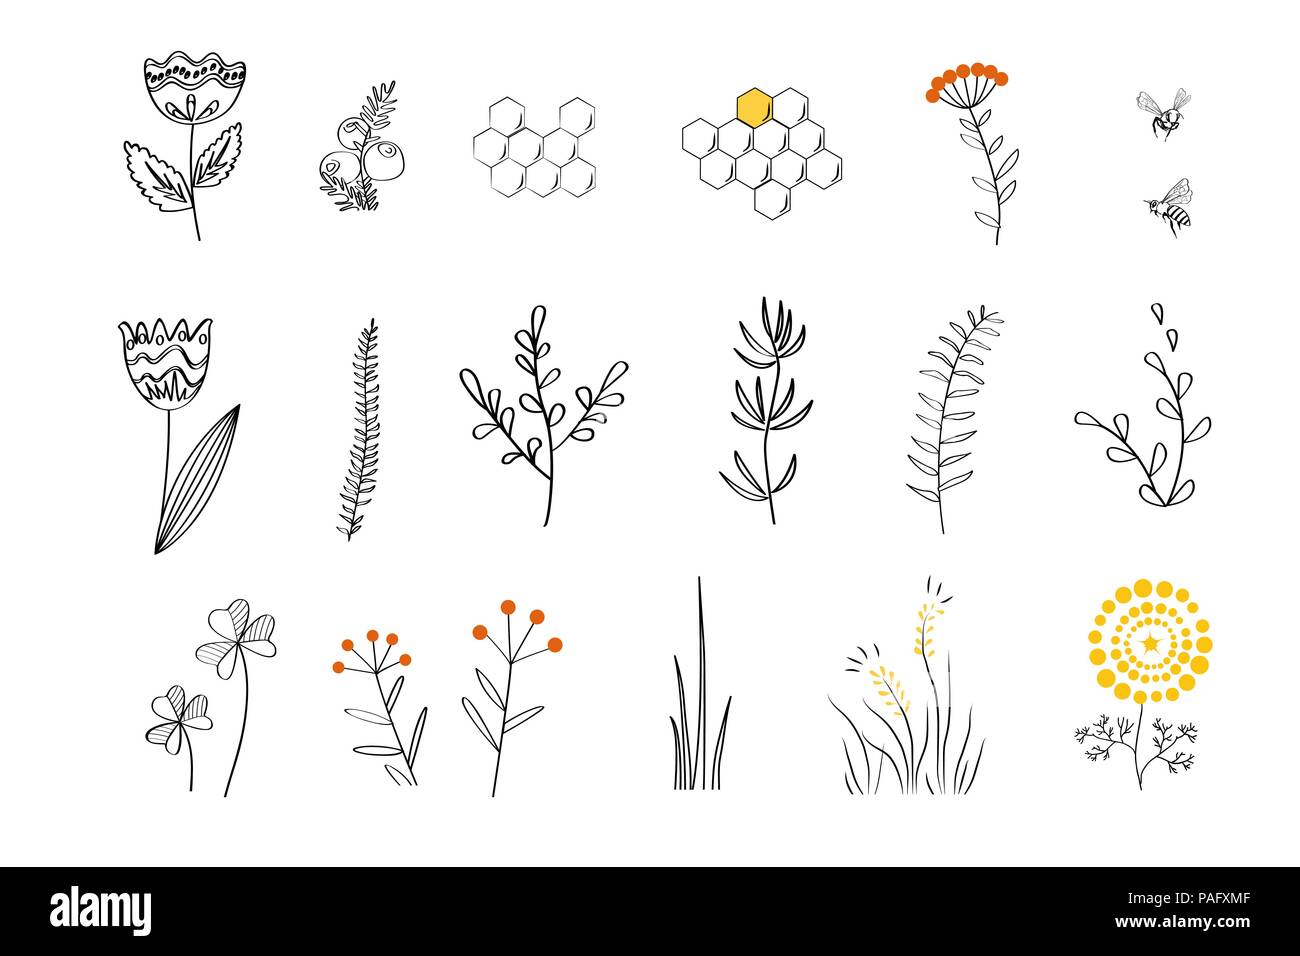 Doodle piante - cartoon fonti di nettare per le api mellifere. Vettore disegnati a mano impostare, stile lineare Illustrazione Vettoriale